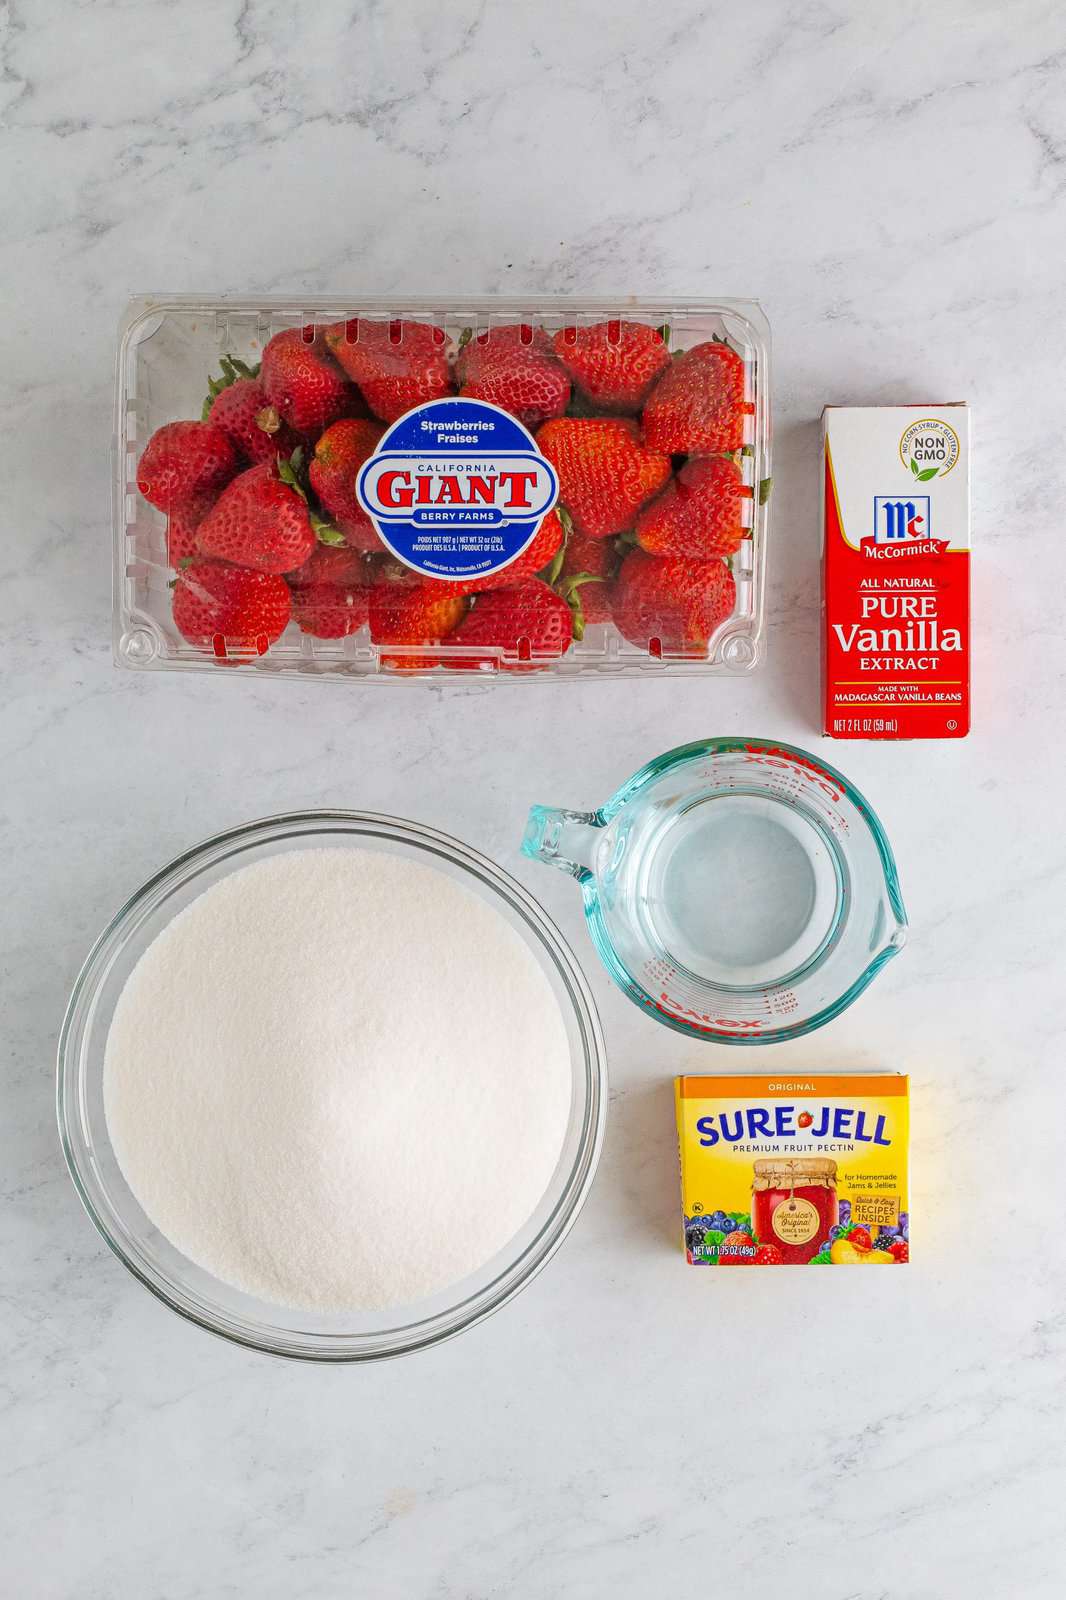 Strawberries, pectin powder, sugar, vanilla extract, and water. 